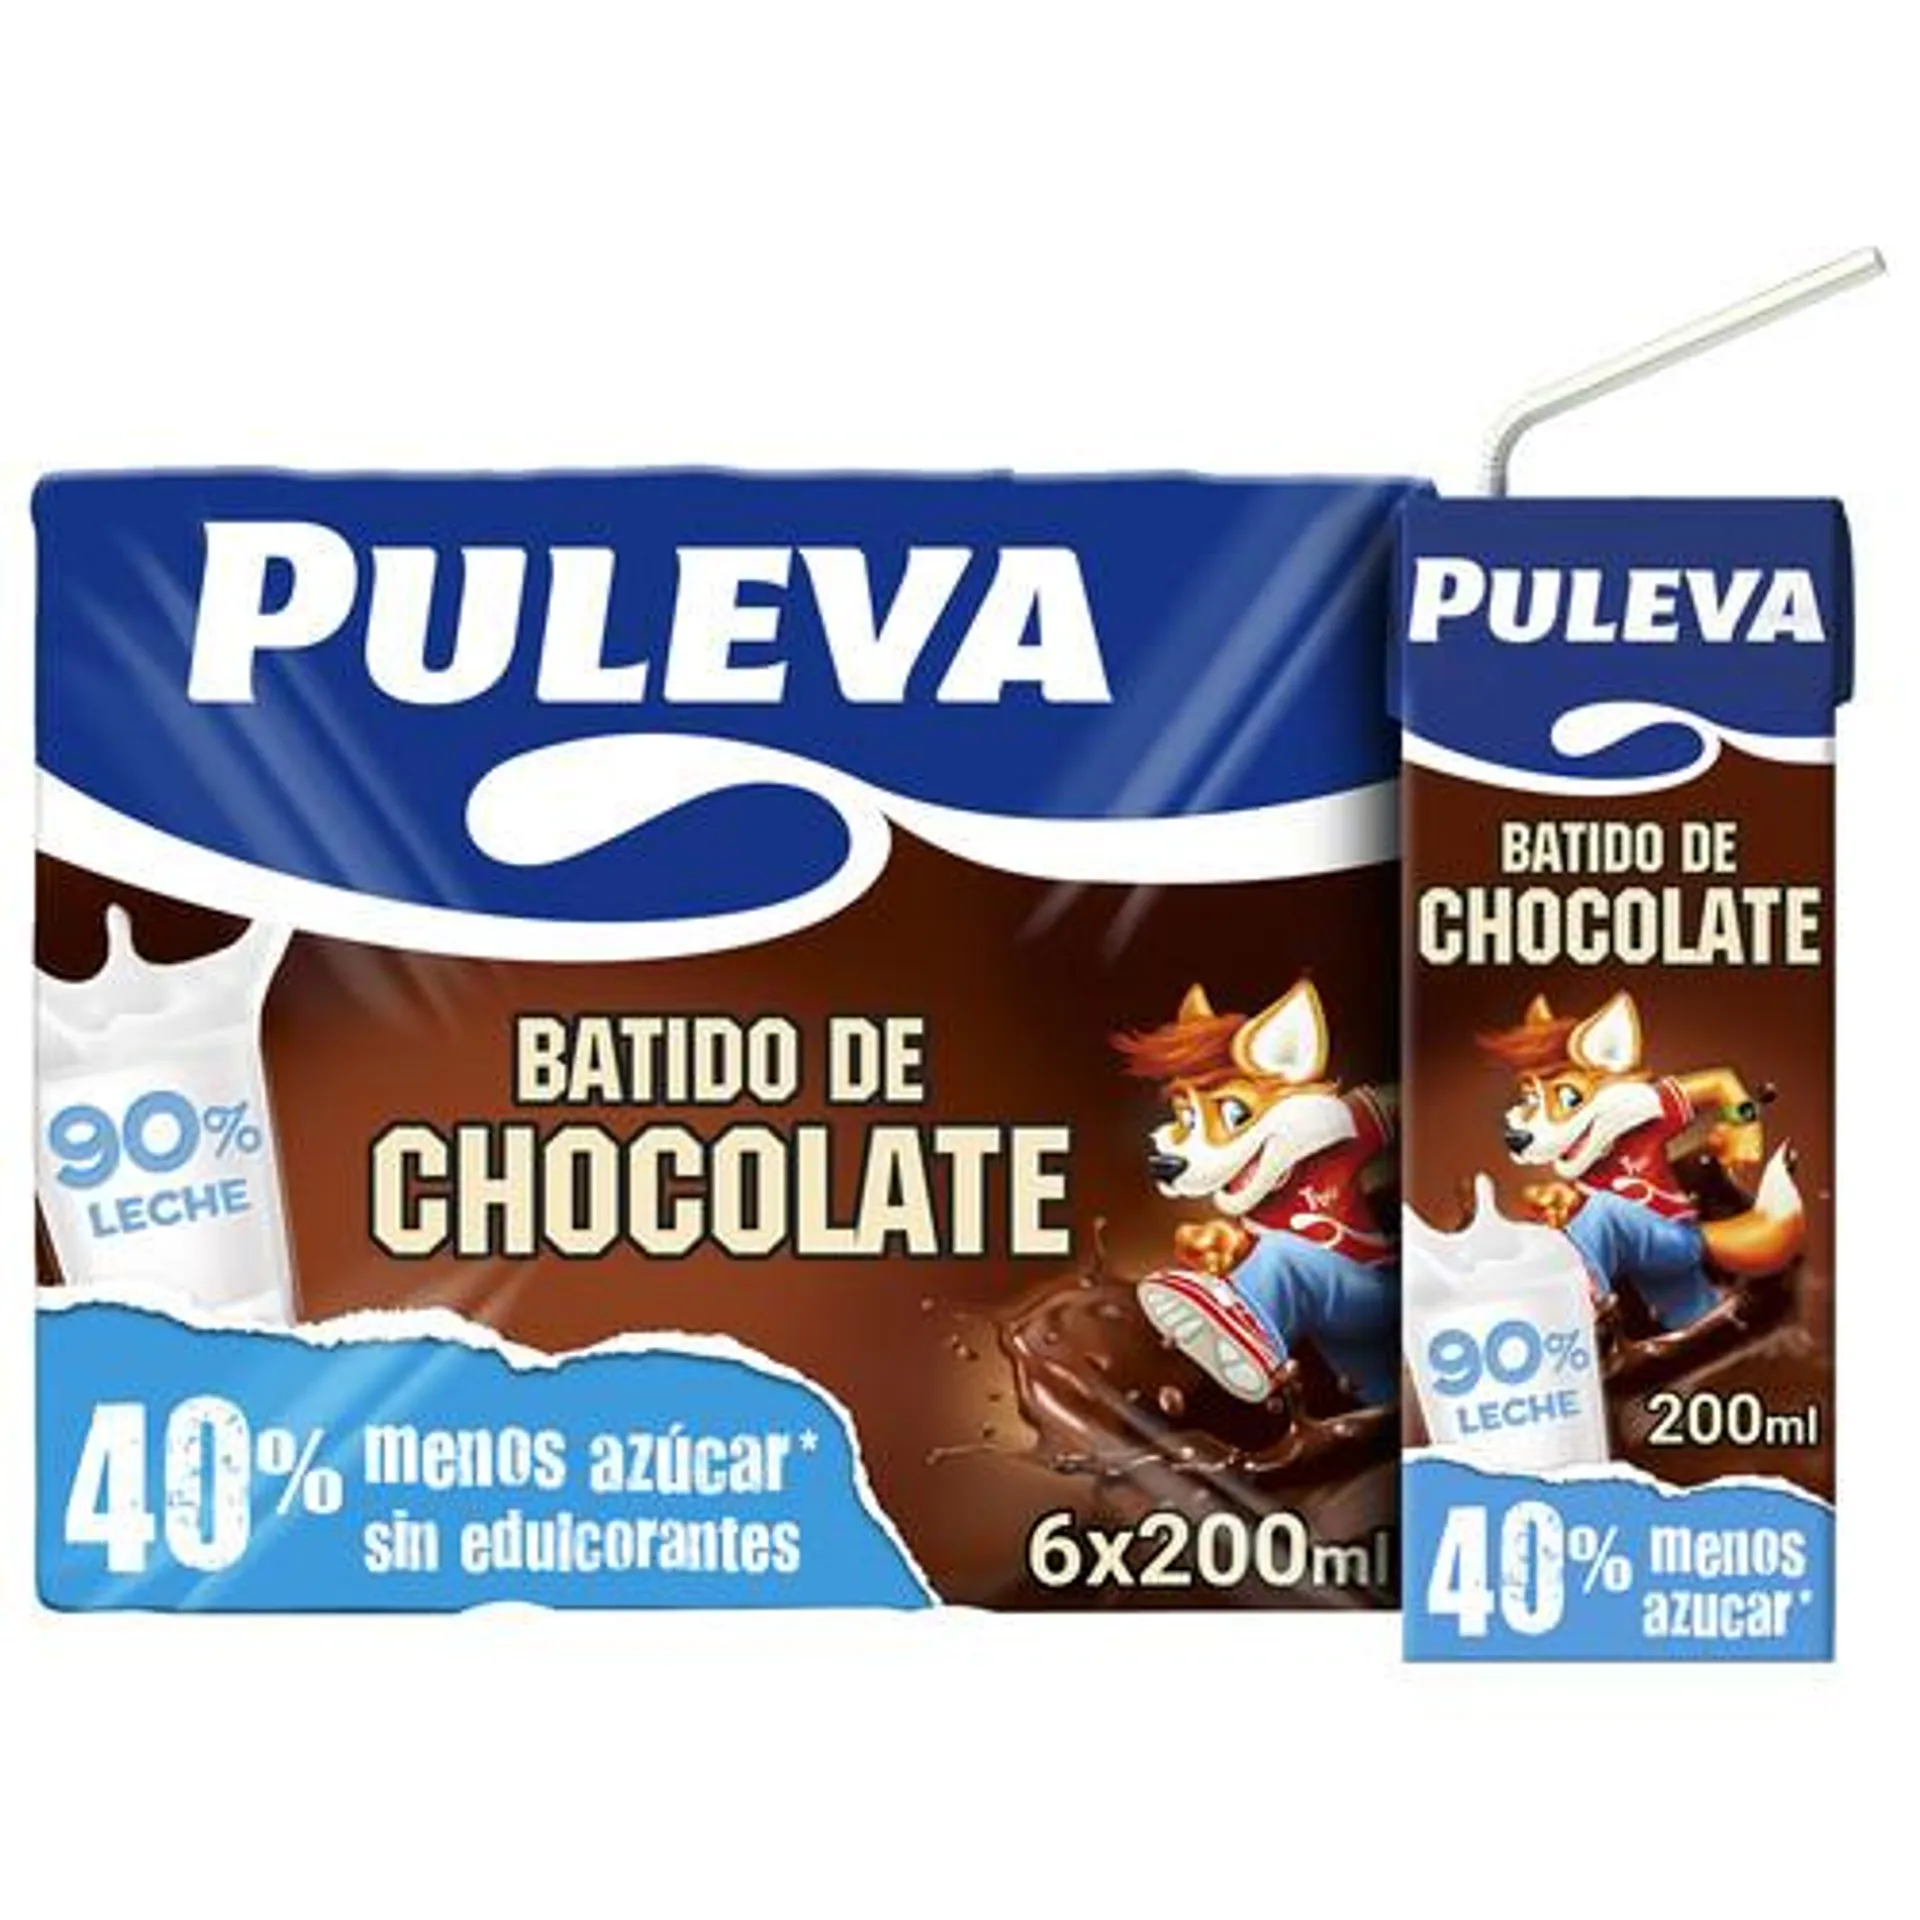 PULEVA Batido con sabor a chocolate, elaborado con un 90% de leche PULEVA 6 x 200 ml.